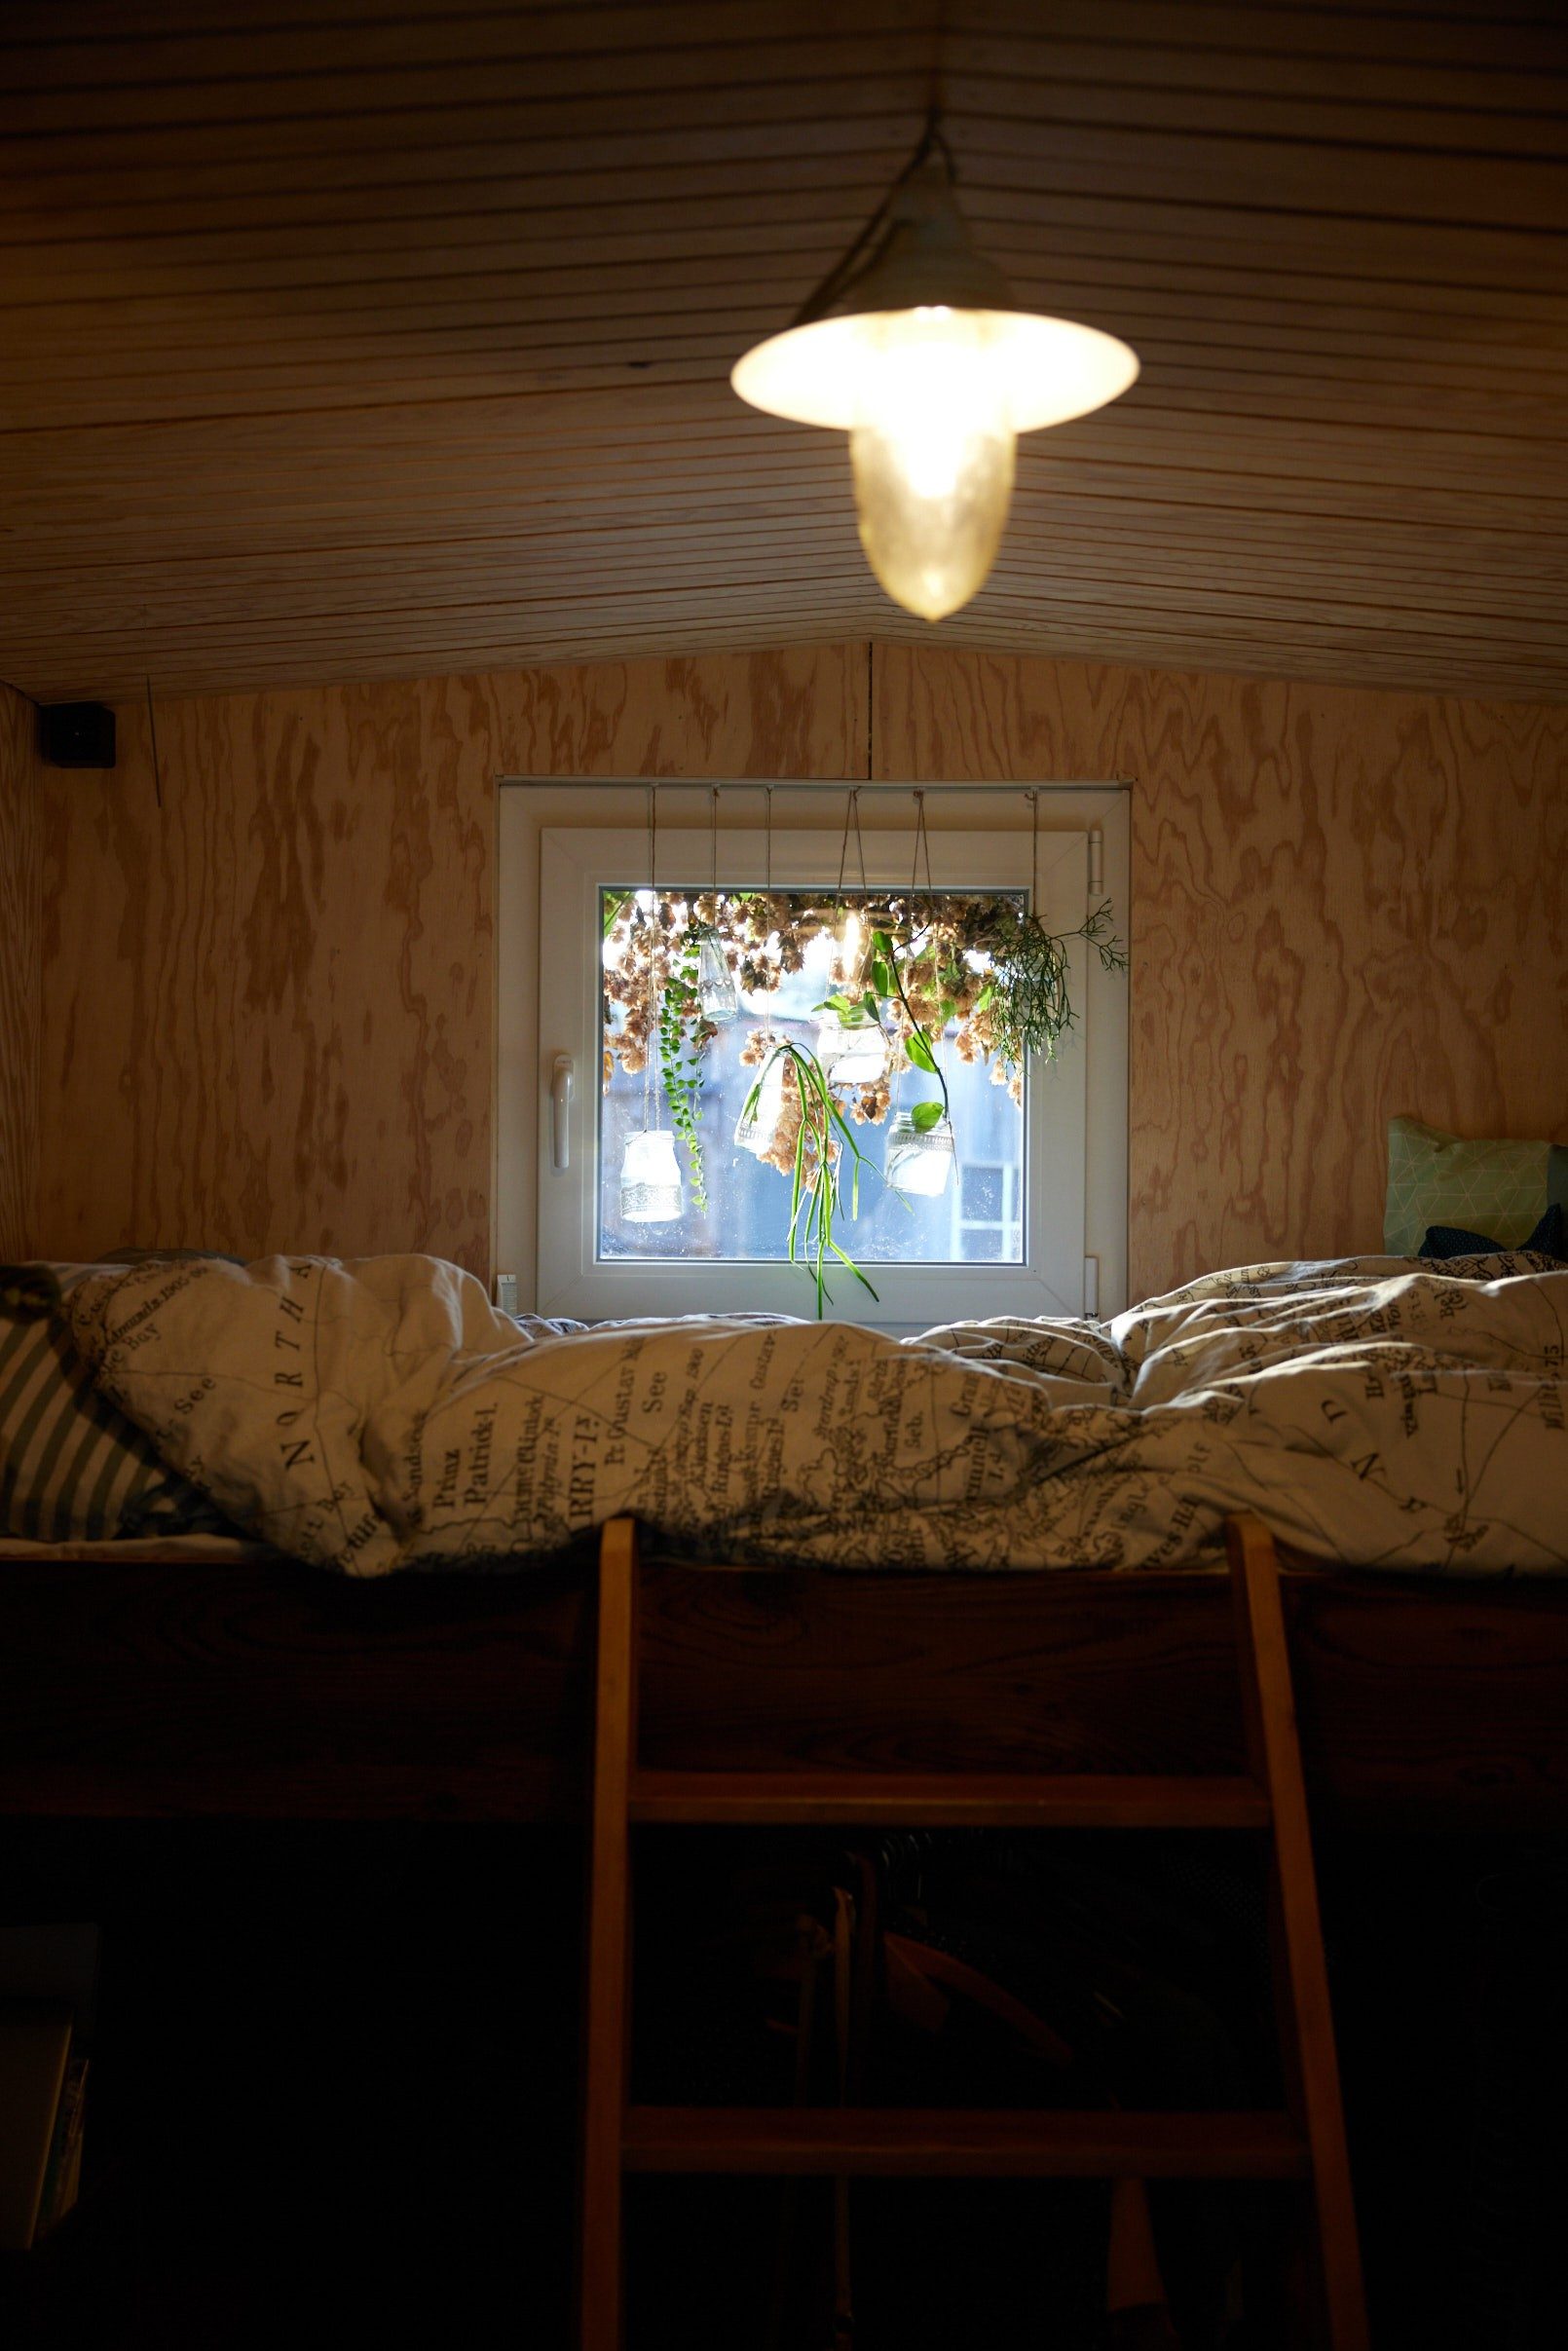 Un lit surélevé, et derrière des plantes accrochées à une fenêtre